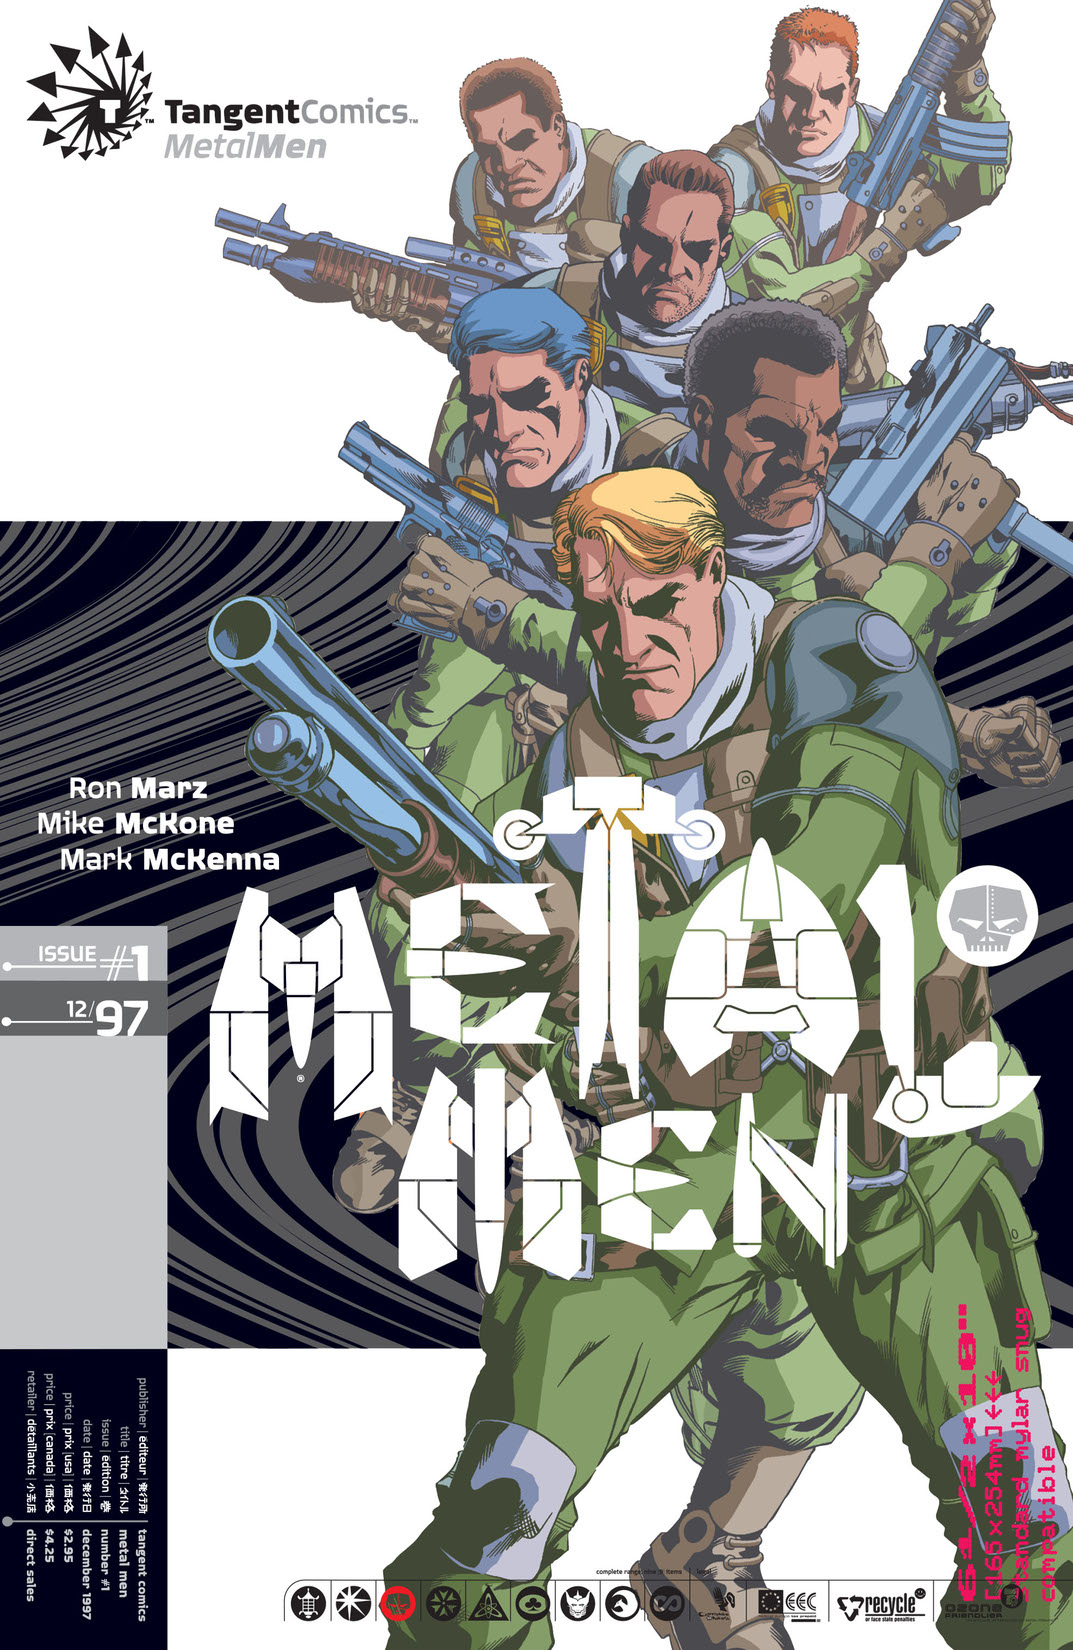 Metal Men #1 preview images